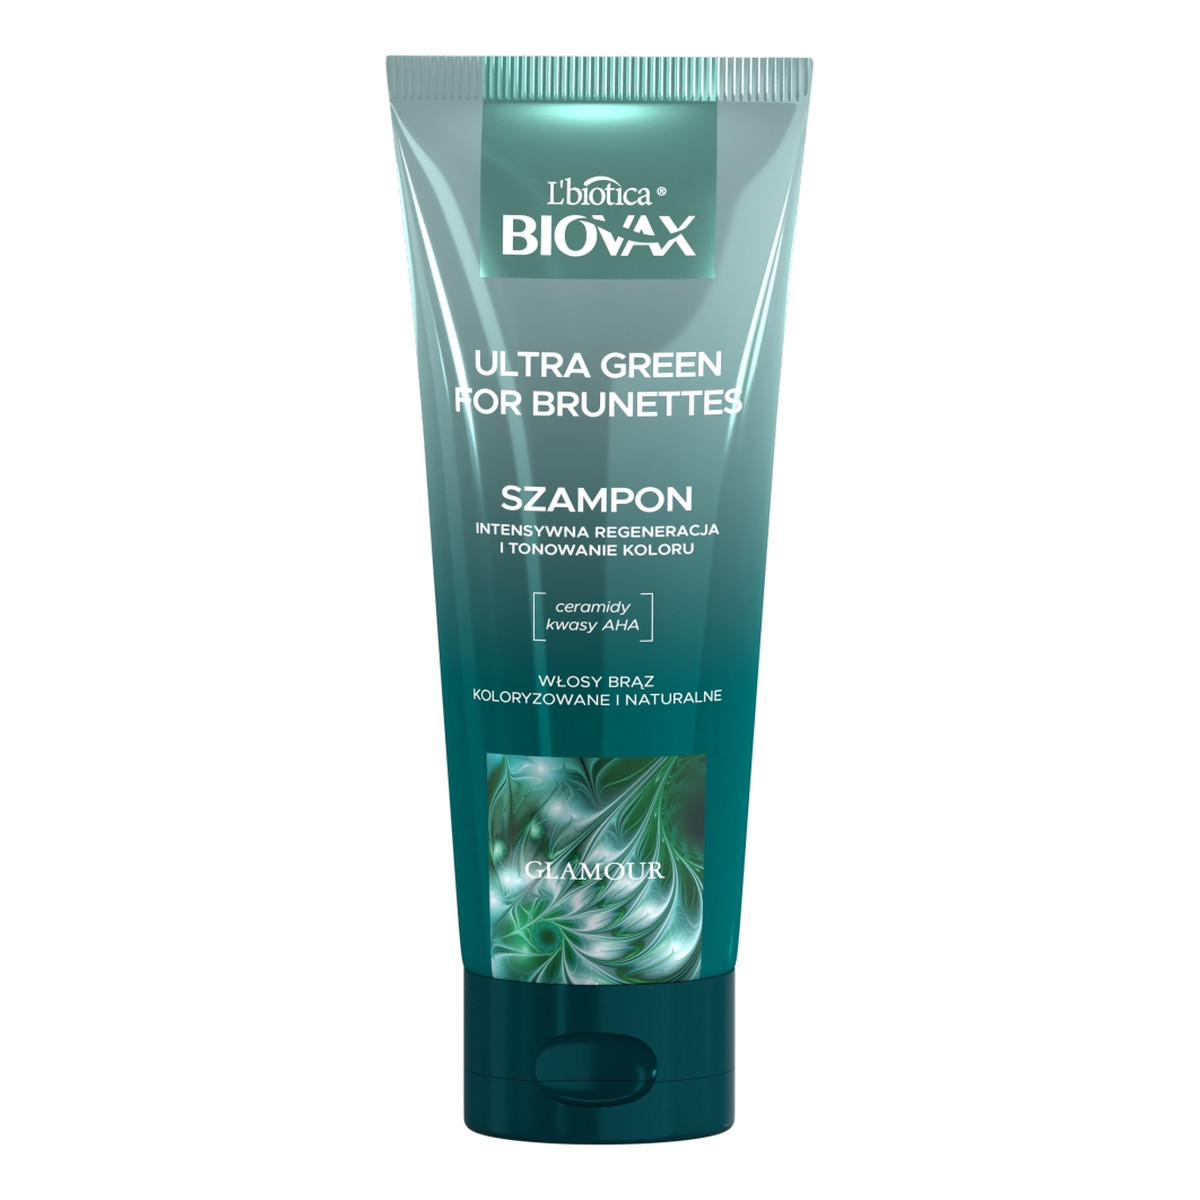 Biovax Glamour ultra green for brunettes szampon do włosów dla brunetek 200ml